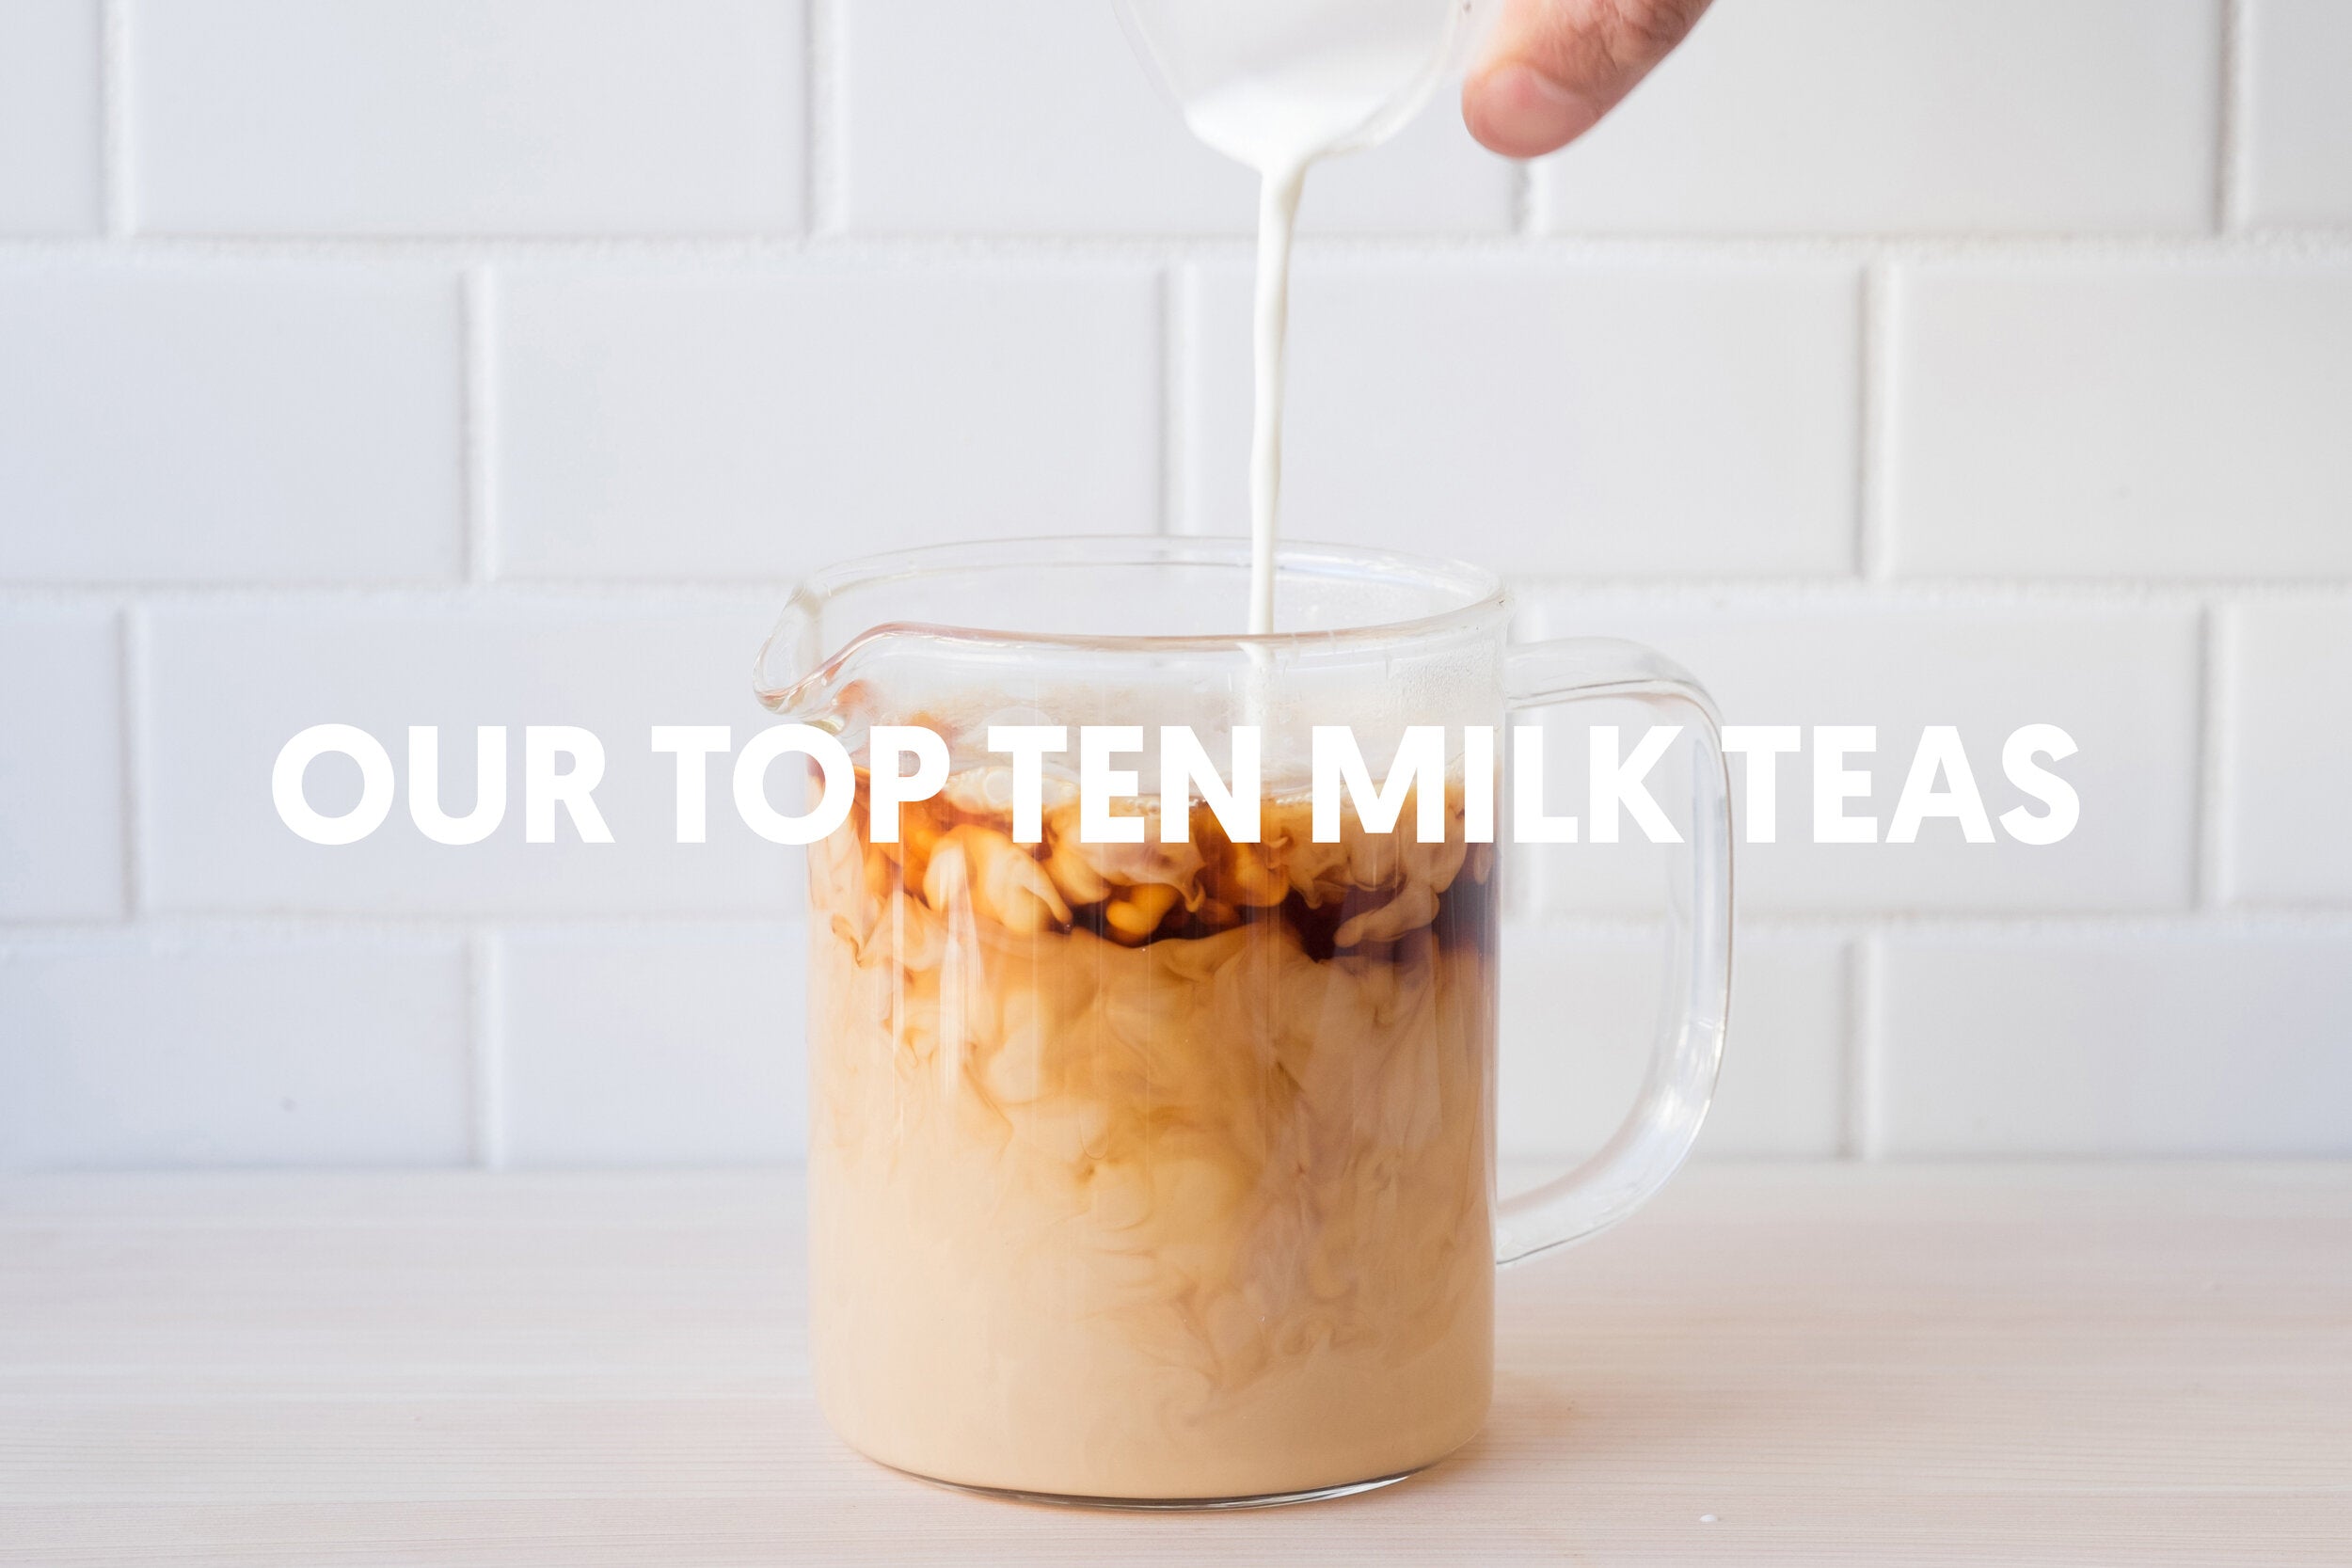 Our Top Ten milk tea